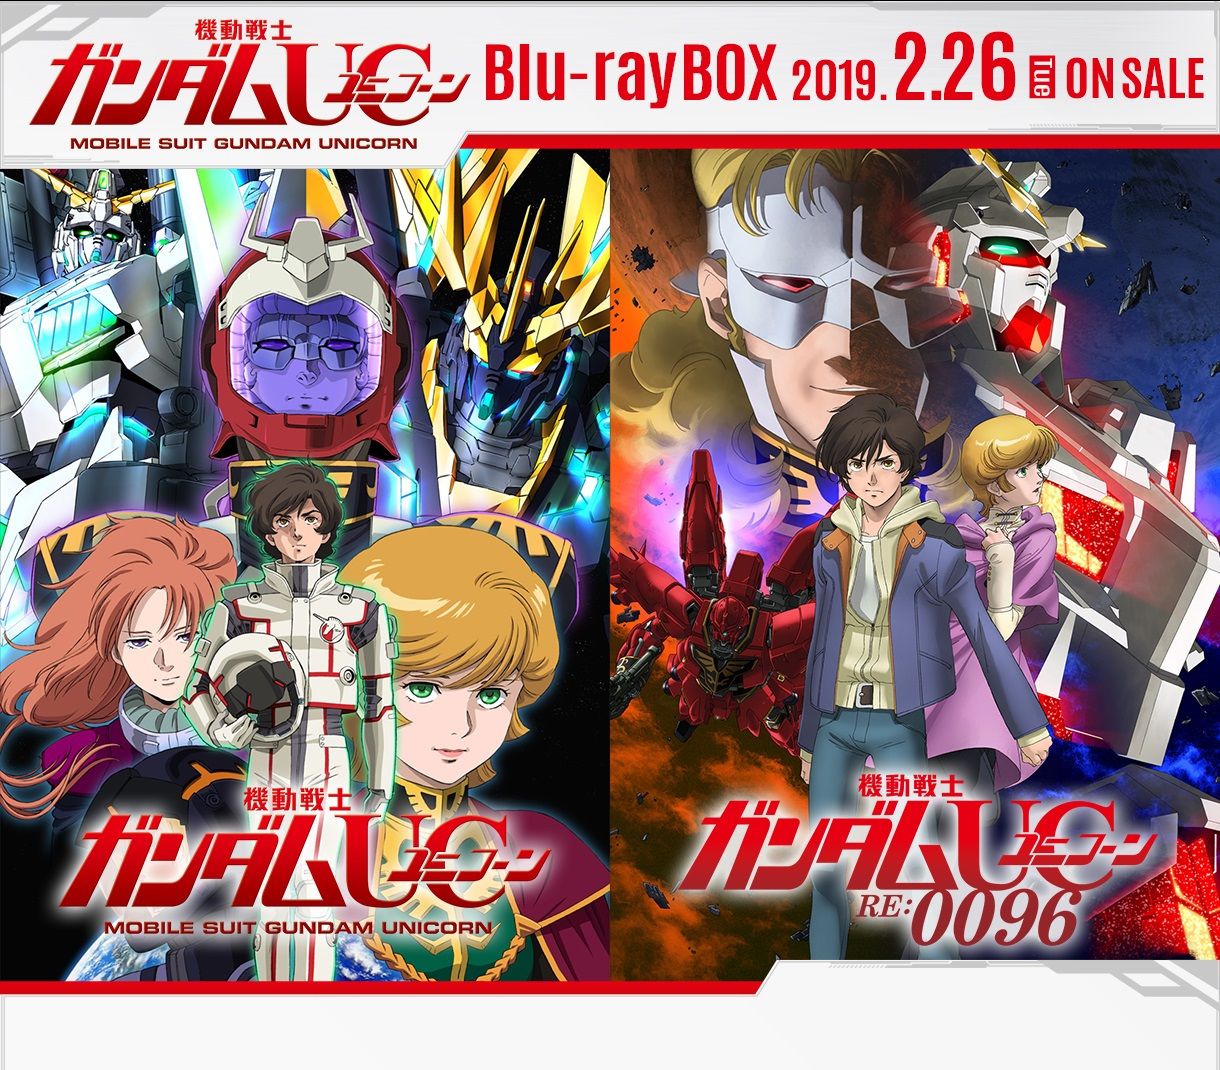 機動戦士ガンダムＵＣ Blu-ray BOX Complete Edition 【RG 1/144 